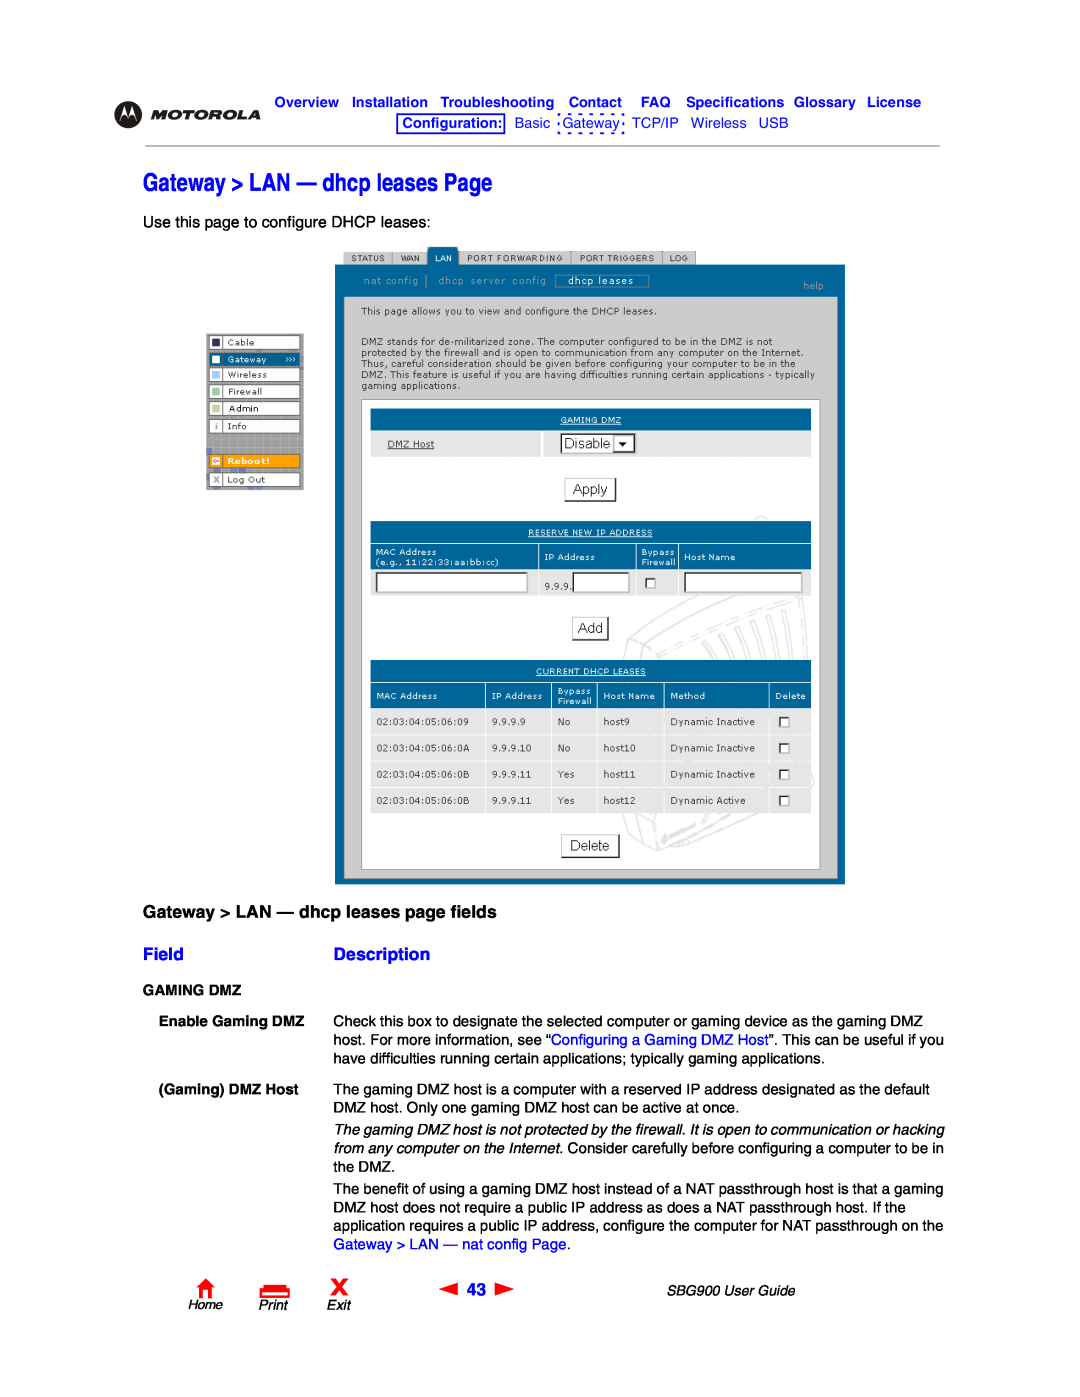 Motorola SBG900 Gateway LAN - dhcp leases Page, Gateway LAN - dhcp leases page fields, FieldDescription, Home Print Exit 